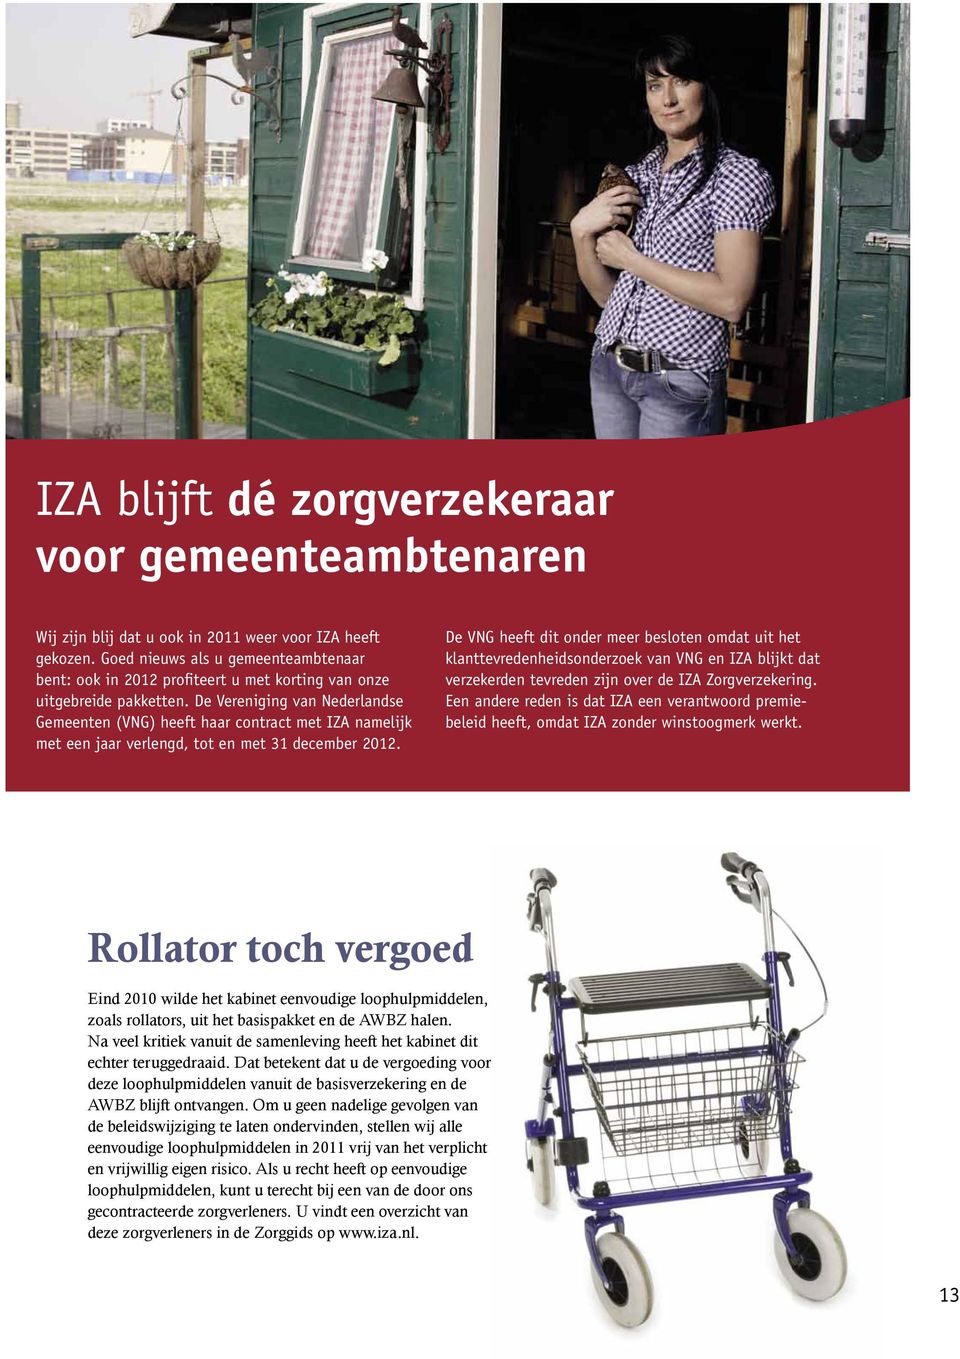 De Vereniging van Nederlandse Gemeenten (VNG) heeft haar contract met IZA namelijk met een jaar verlengd, tot en met 31 december 2012.